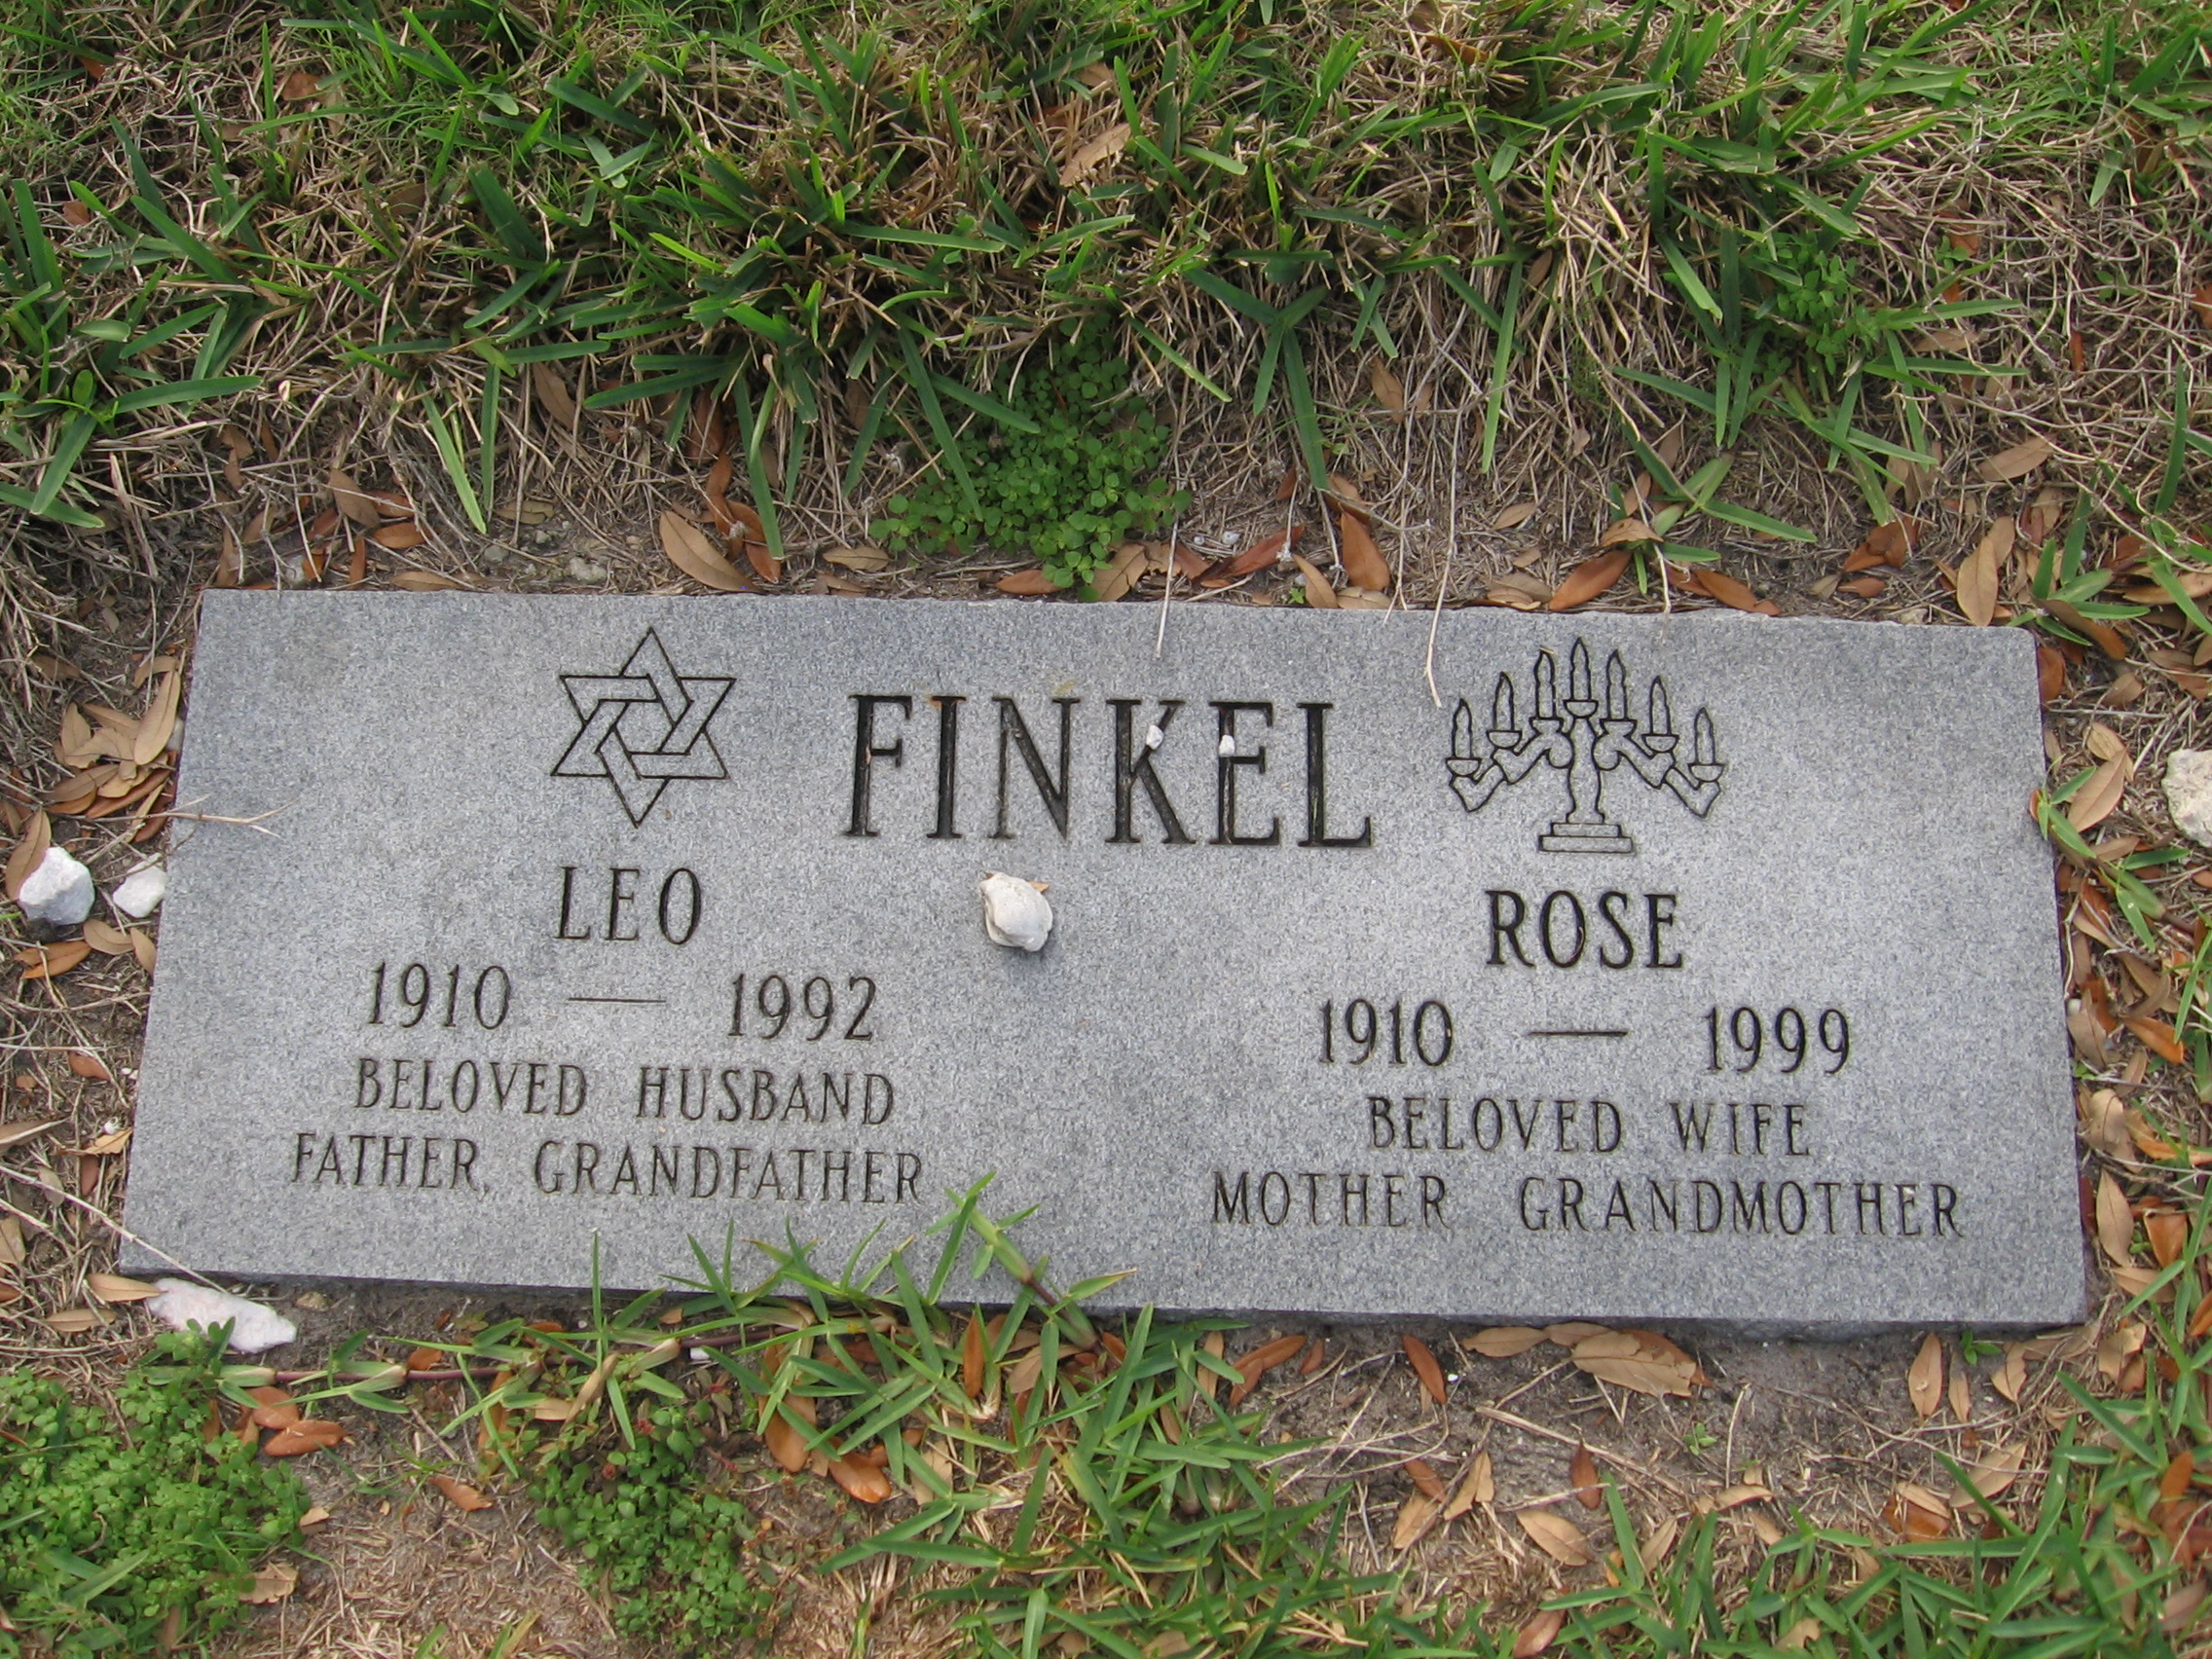 Rose Finkel